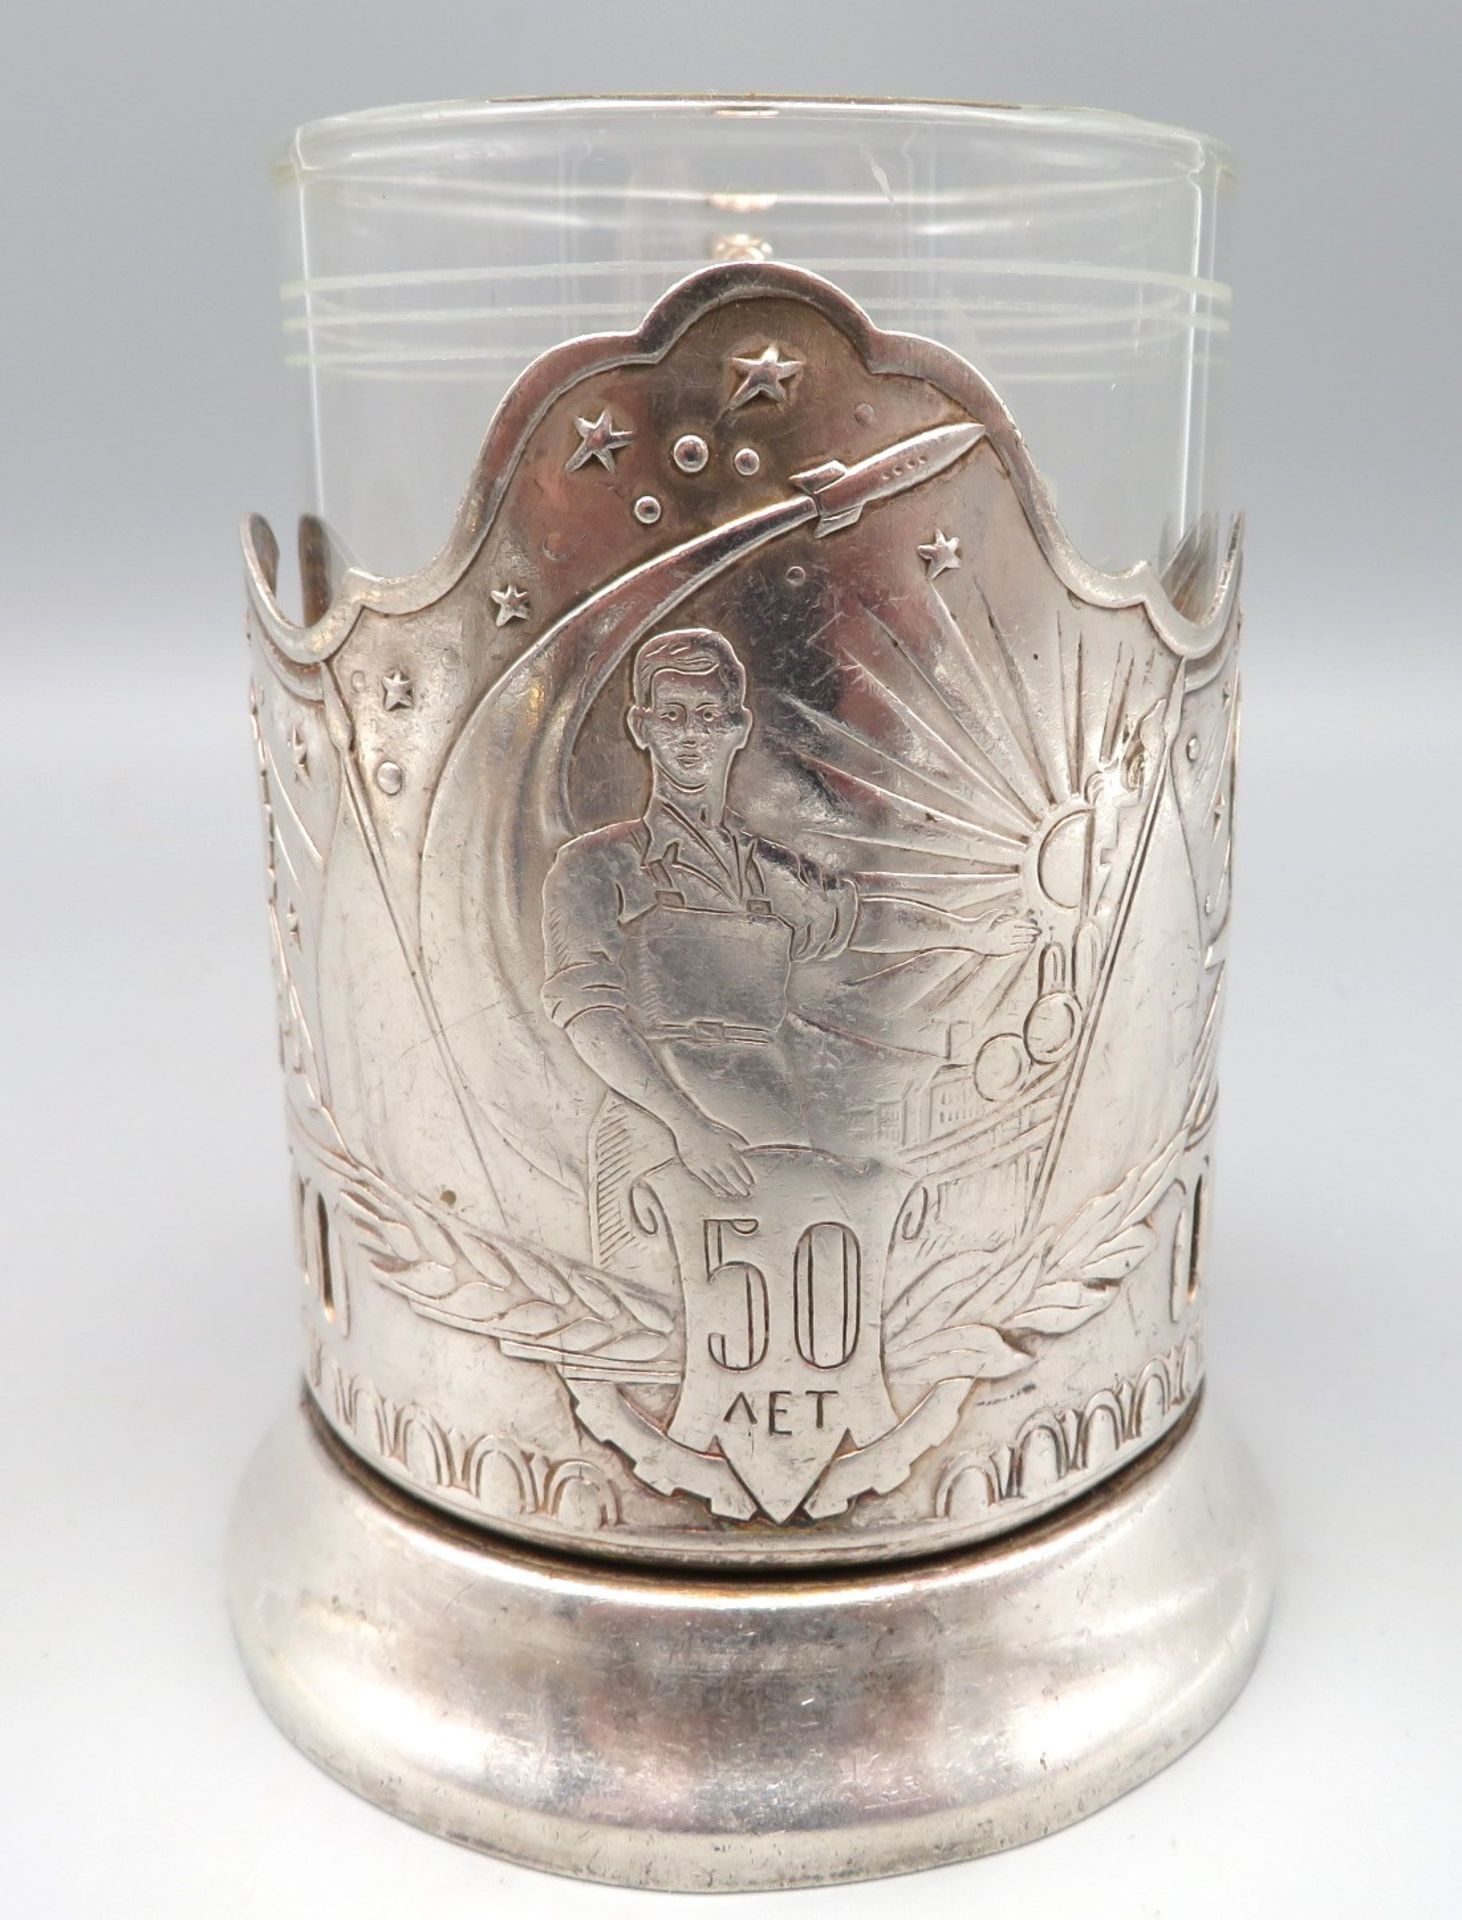 Teeglashalter, Russland, versilberte Montur mit Reliefdekor von Sputnik, gem., h 11 cm, d 11 cm. - Image 2 of 4